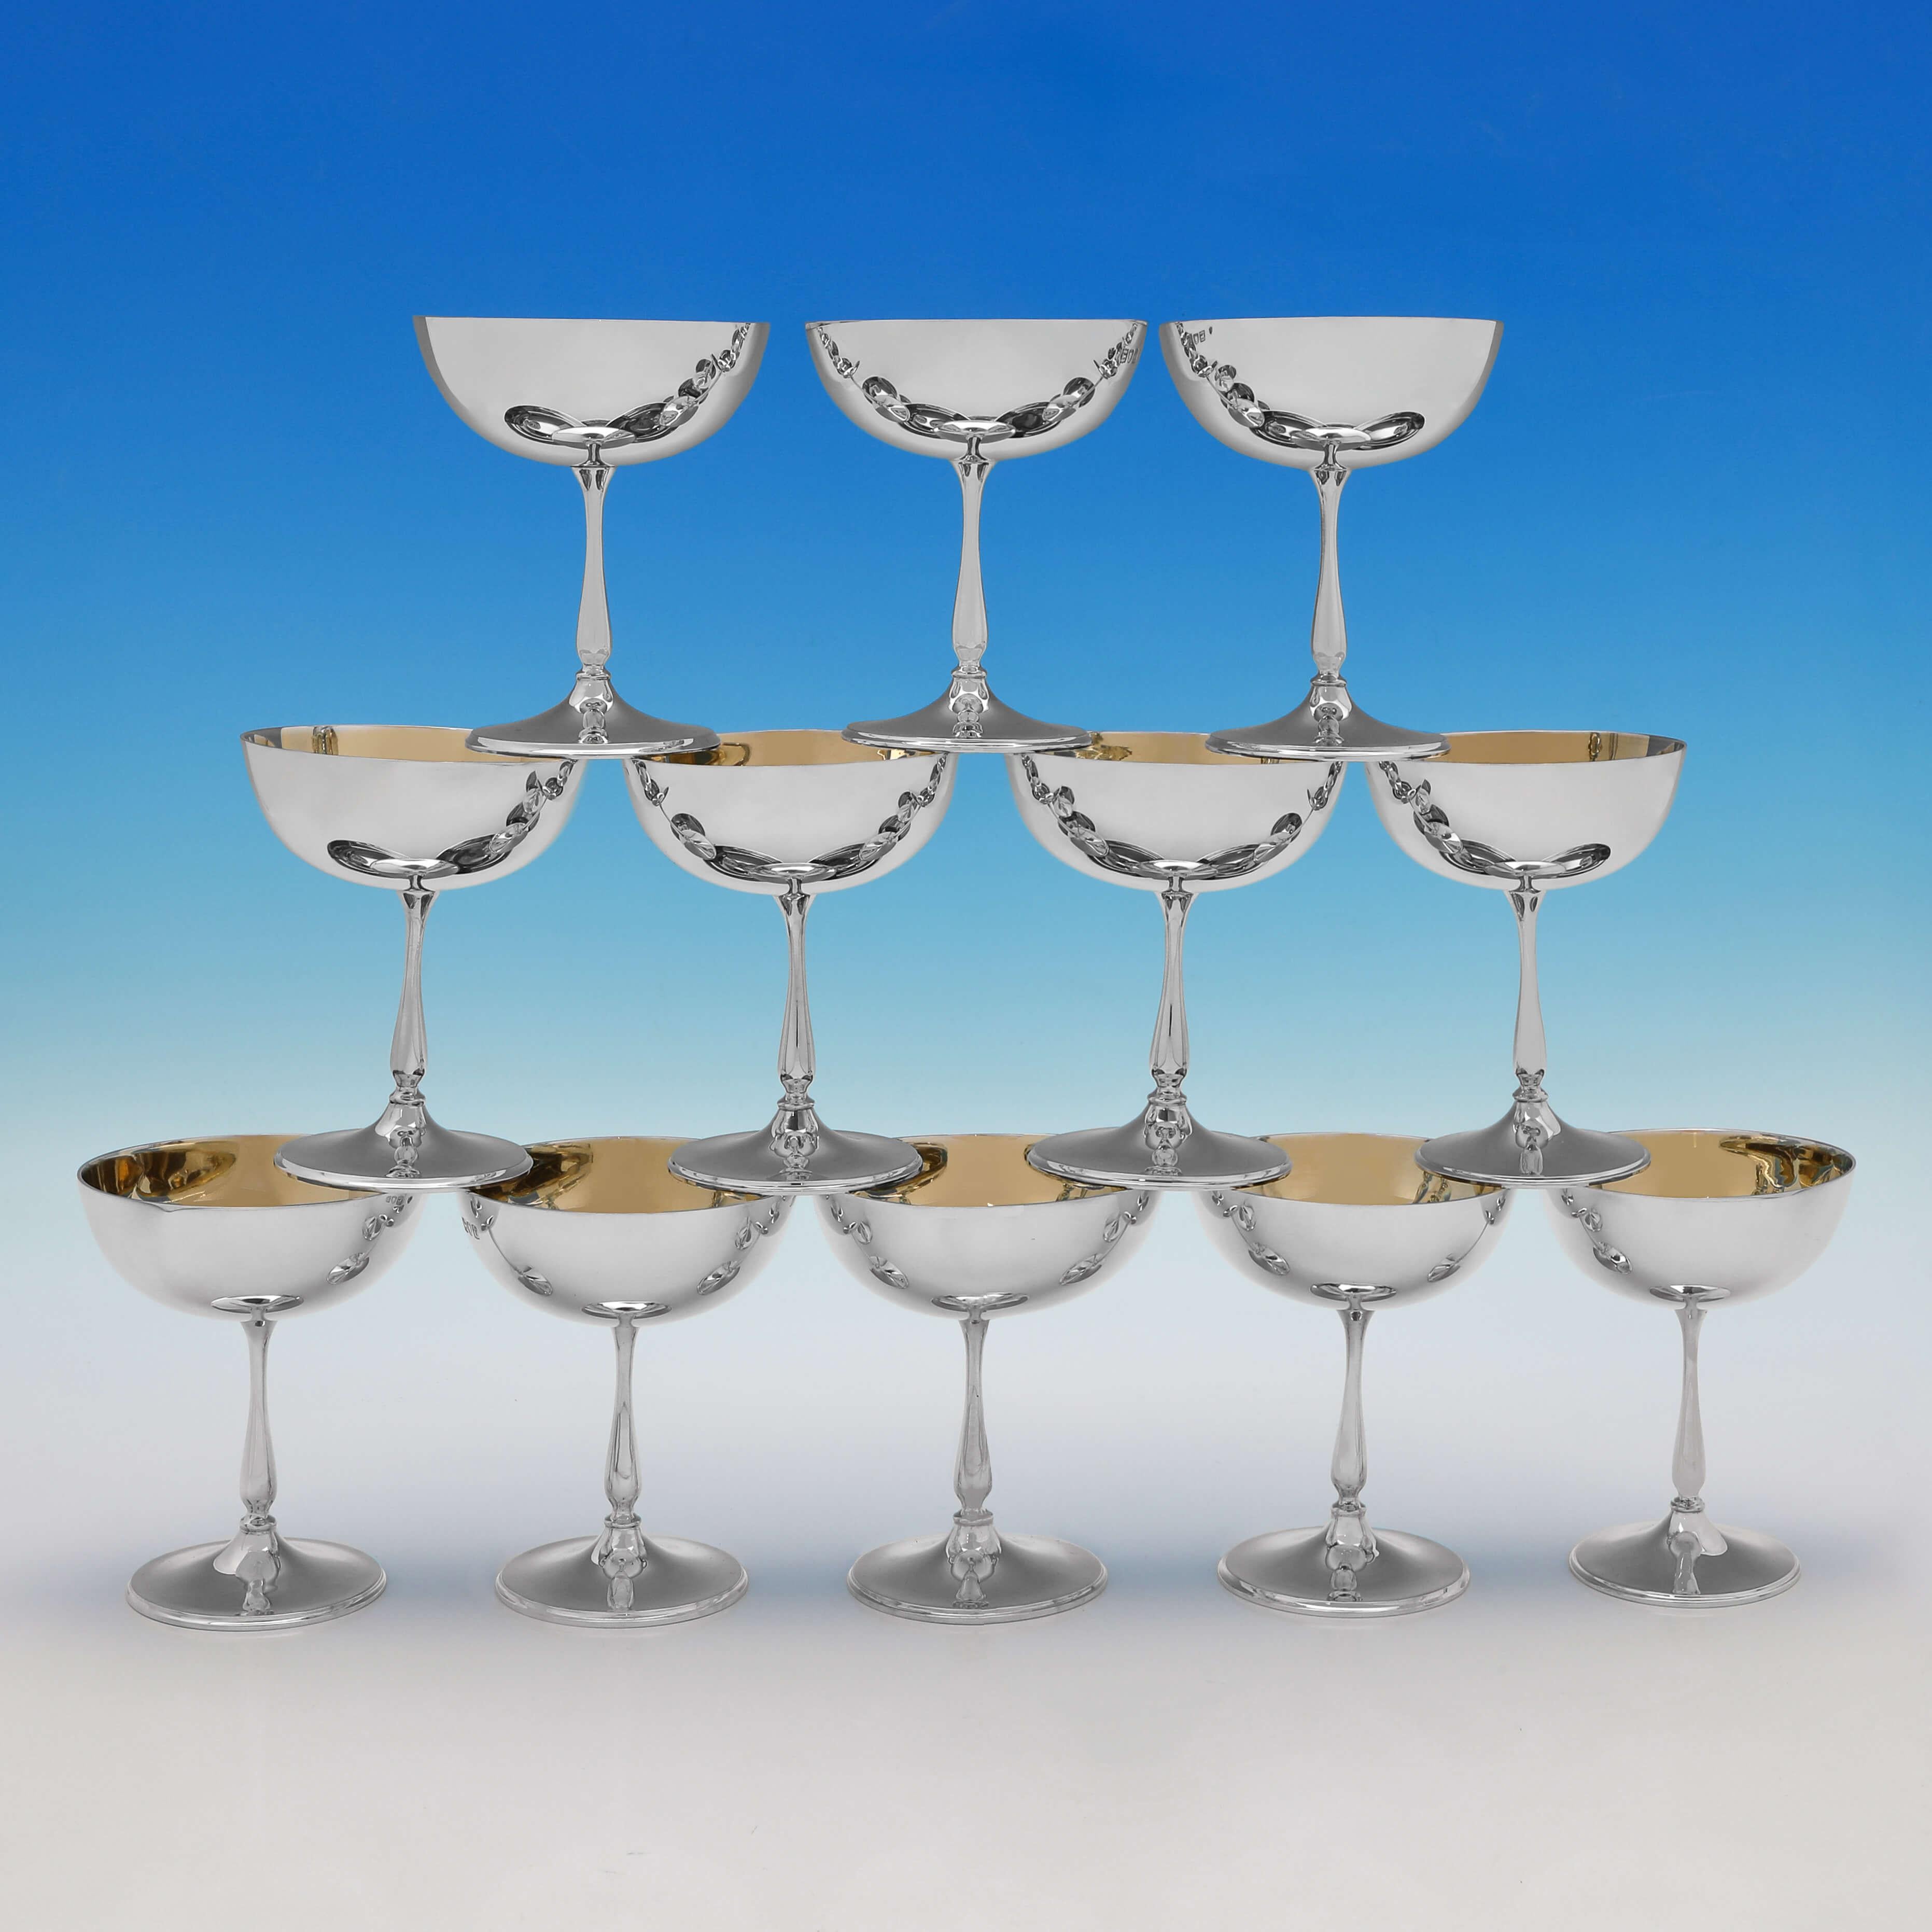 Dieses sehr hübsche Set von 12 antiken Sterling-Silber-Champagnergläsern wurde 1901/5 in London von Edward Barnard & Sons gepunzt und wird in der Originalschachtel präsentiert. Die Gläser haben ein schlichtes Design und sind innen vergoldet. Jeder